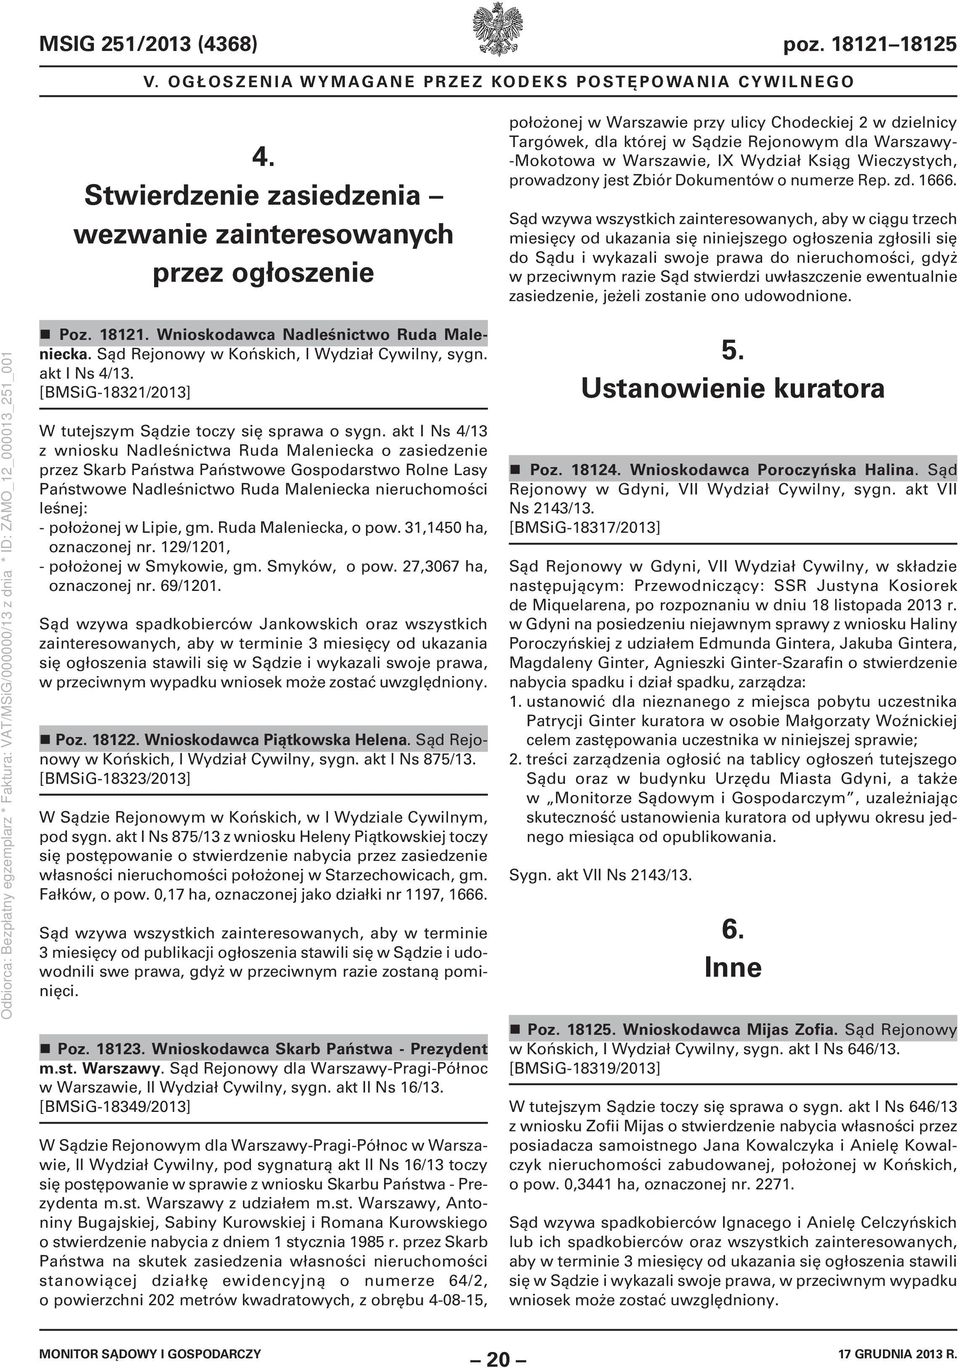 Warszawie, IX Wydział Ksiąg Wieczystych, prowadzony jest Zbiór Dokumentów o numerze Rep. zd. 1666.